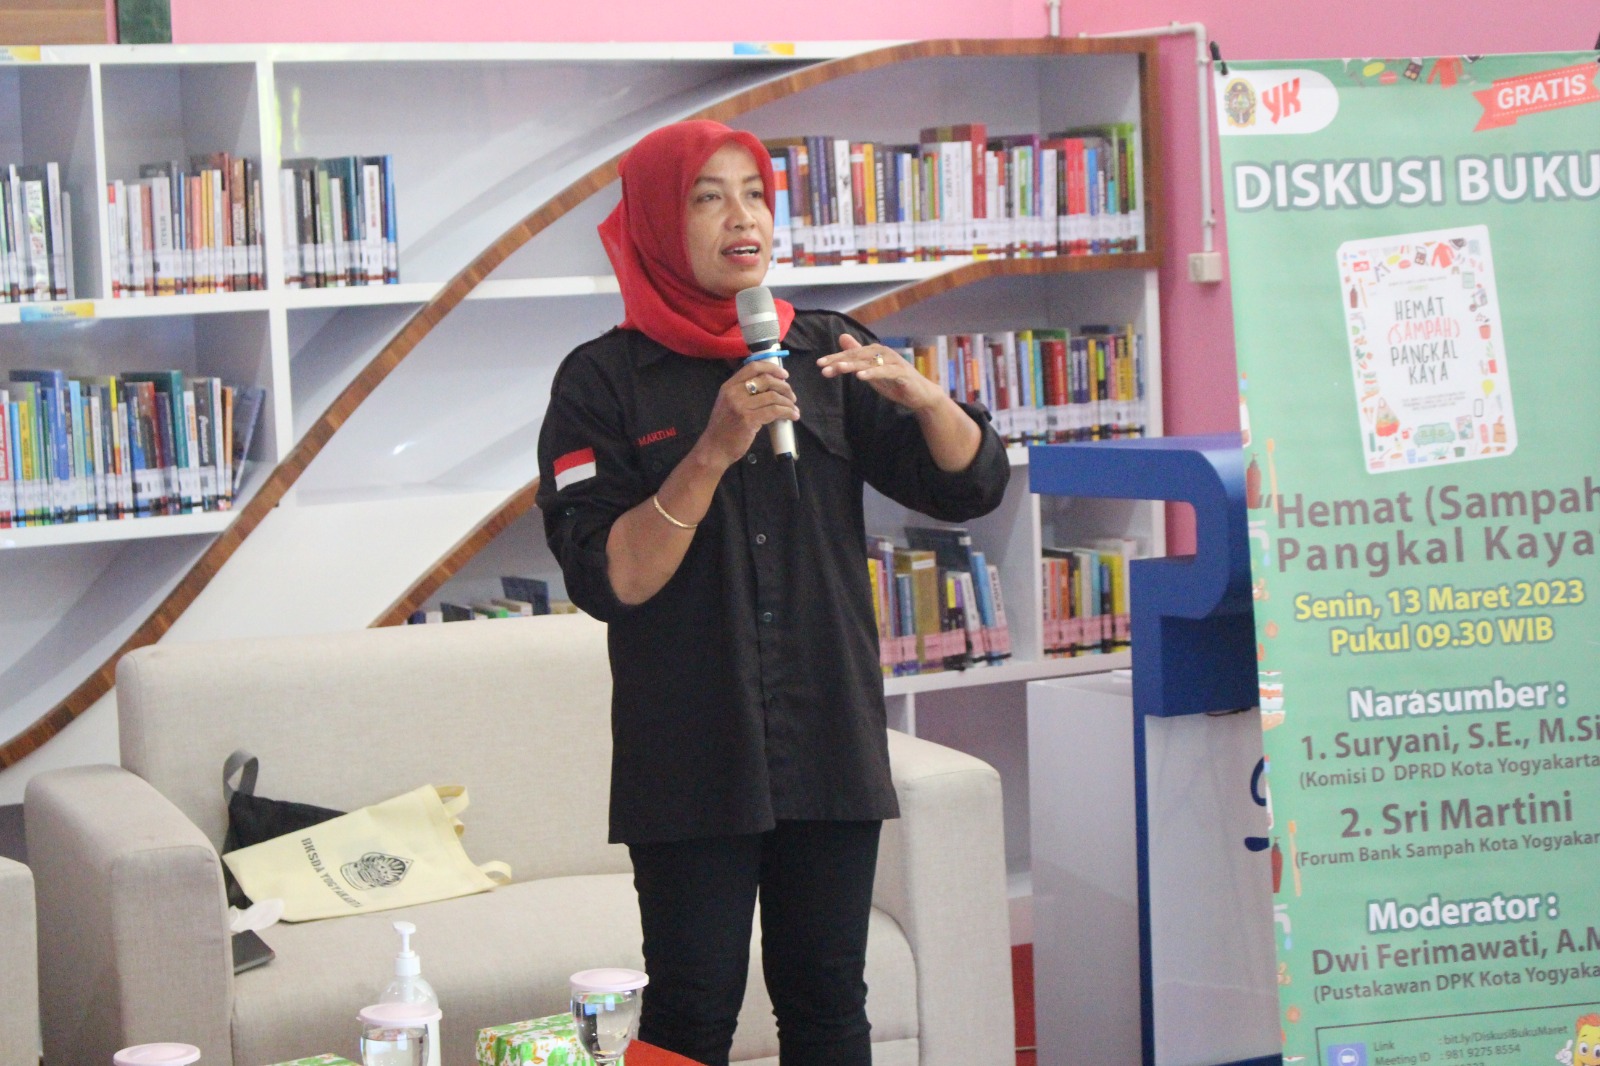 Peduli Sampah, DPK Kota Yogyakarta Selenggarakan Diskusi Buku “Hemat (Sampah) Pangkal Kaya